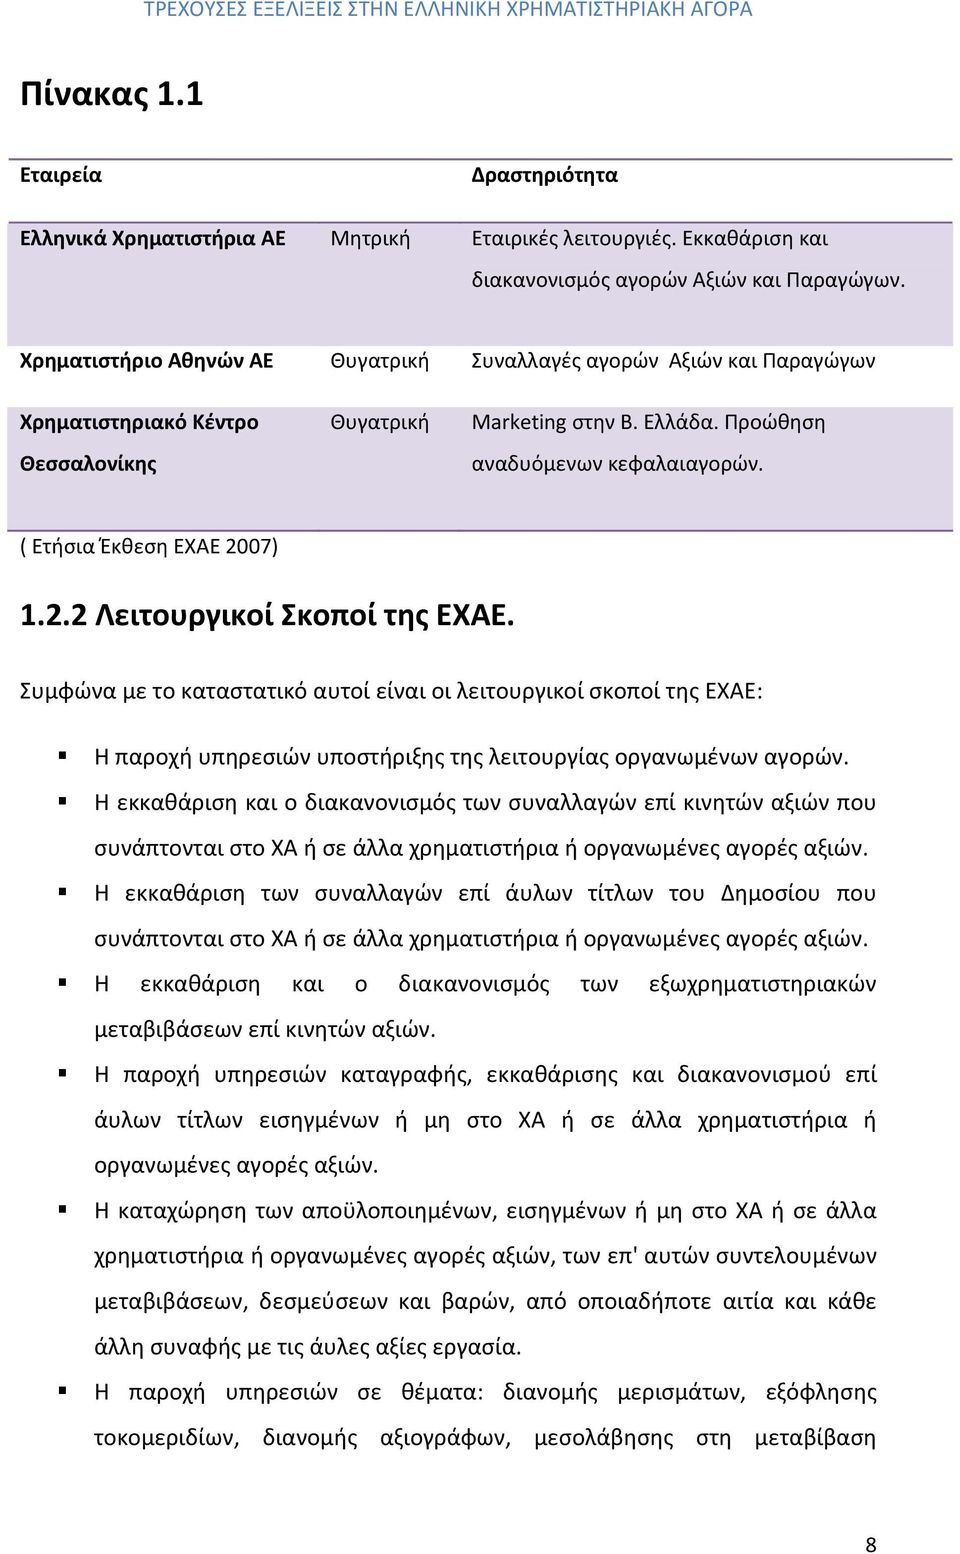 ( Ετήσια Έκθεση ΕΧΑΕ 2007) 1.2.2 Λειτουργικοί Σκοποί της ΕΧΑΕ. Συμφώνα με το καταστατικό αυτοί είναι οι λειτουργικοί σκοποί της ΕΧΑΕ: Η παροχή υπηρεσιών υποστήριξης της λειτουργίας οργανωμένων αγορών.